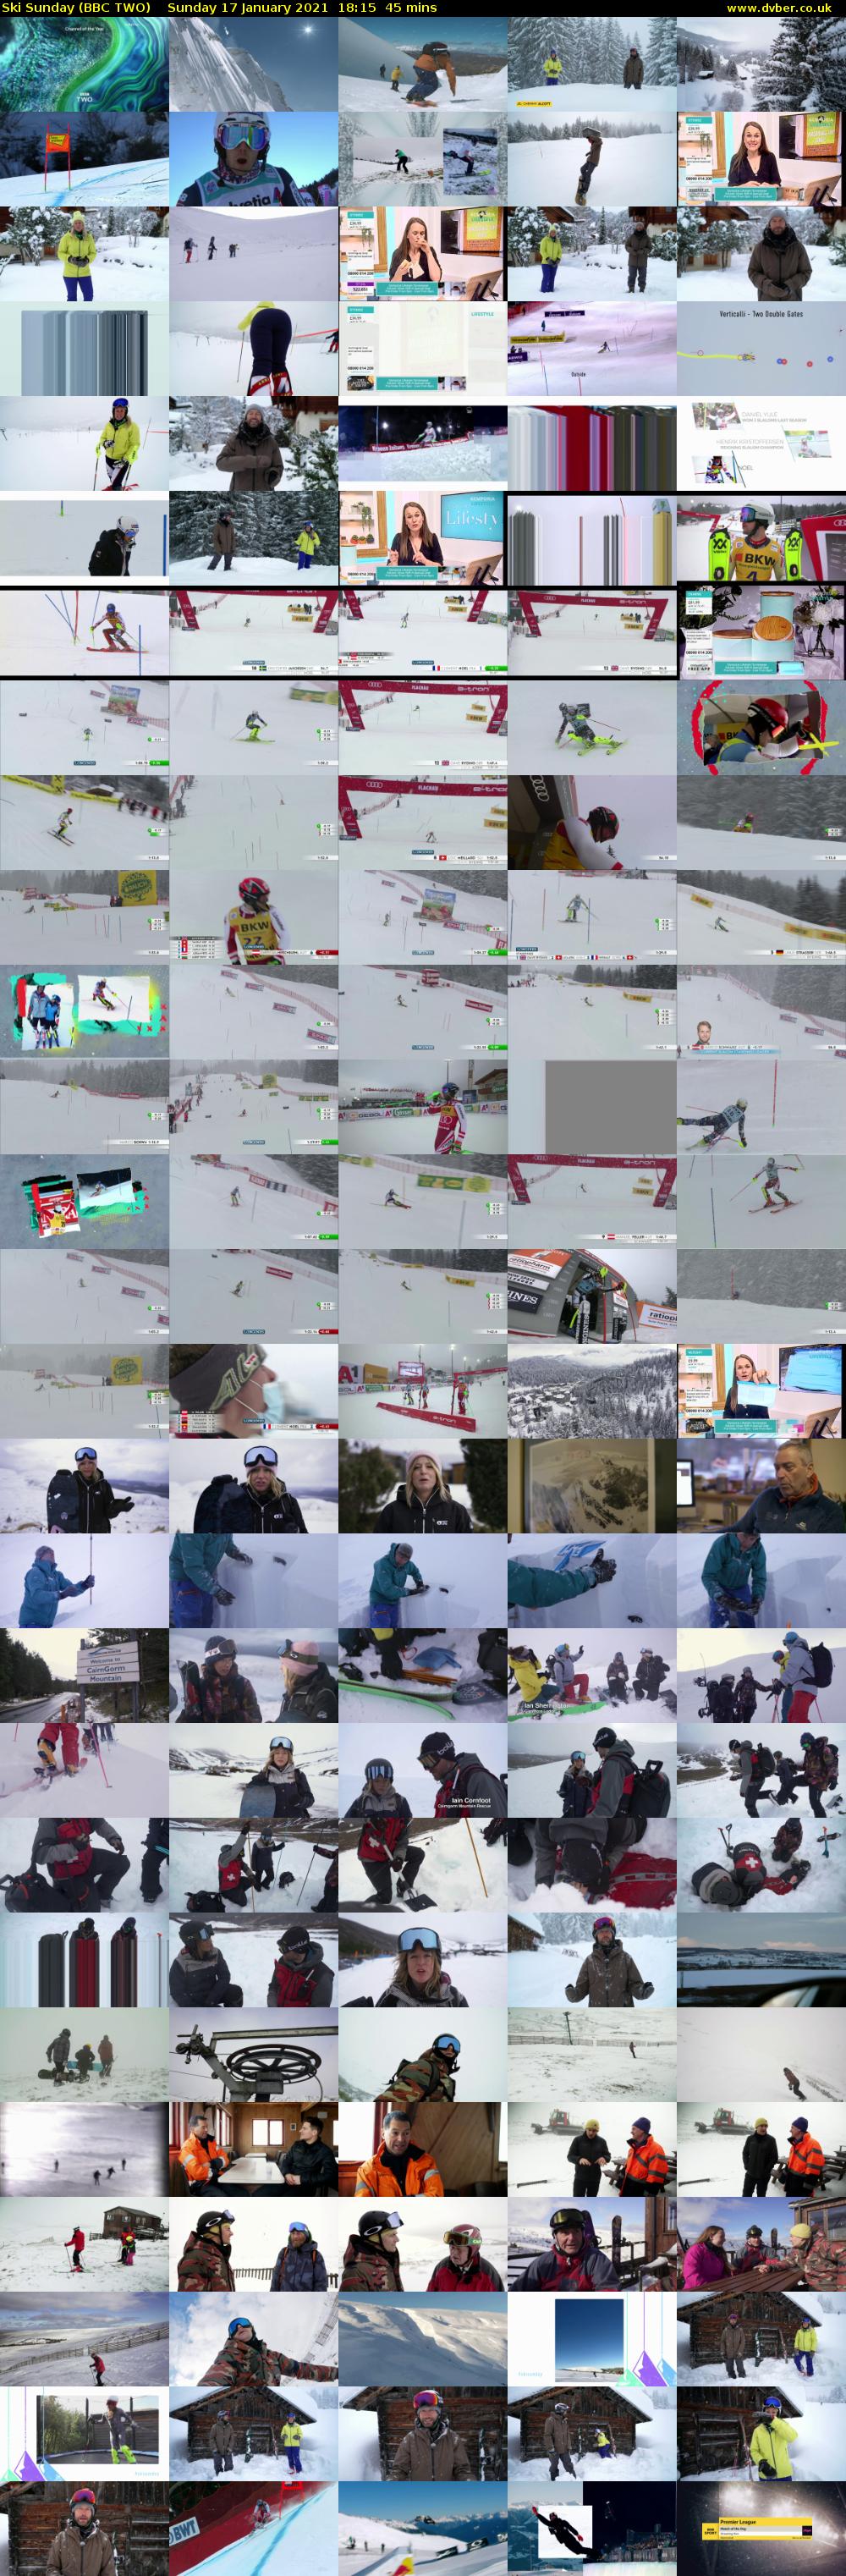 Ski Sunday (BBC TWO) Sunday 17 January 2021 18:15 - 19:00